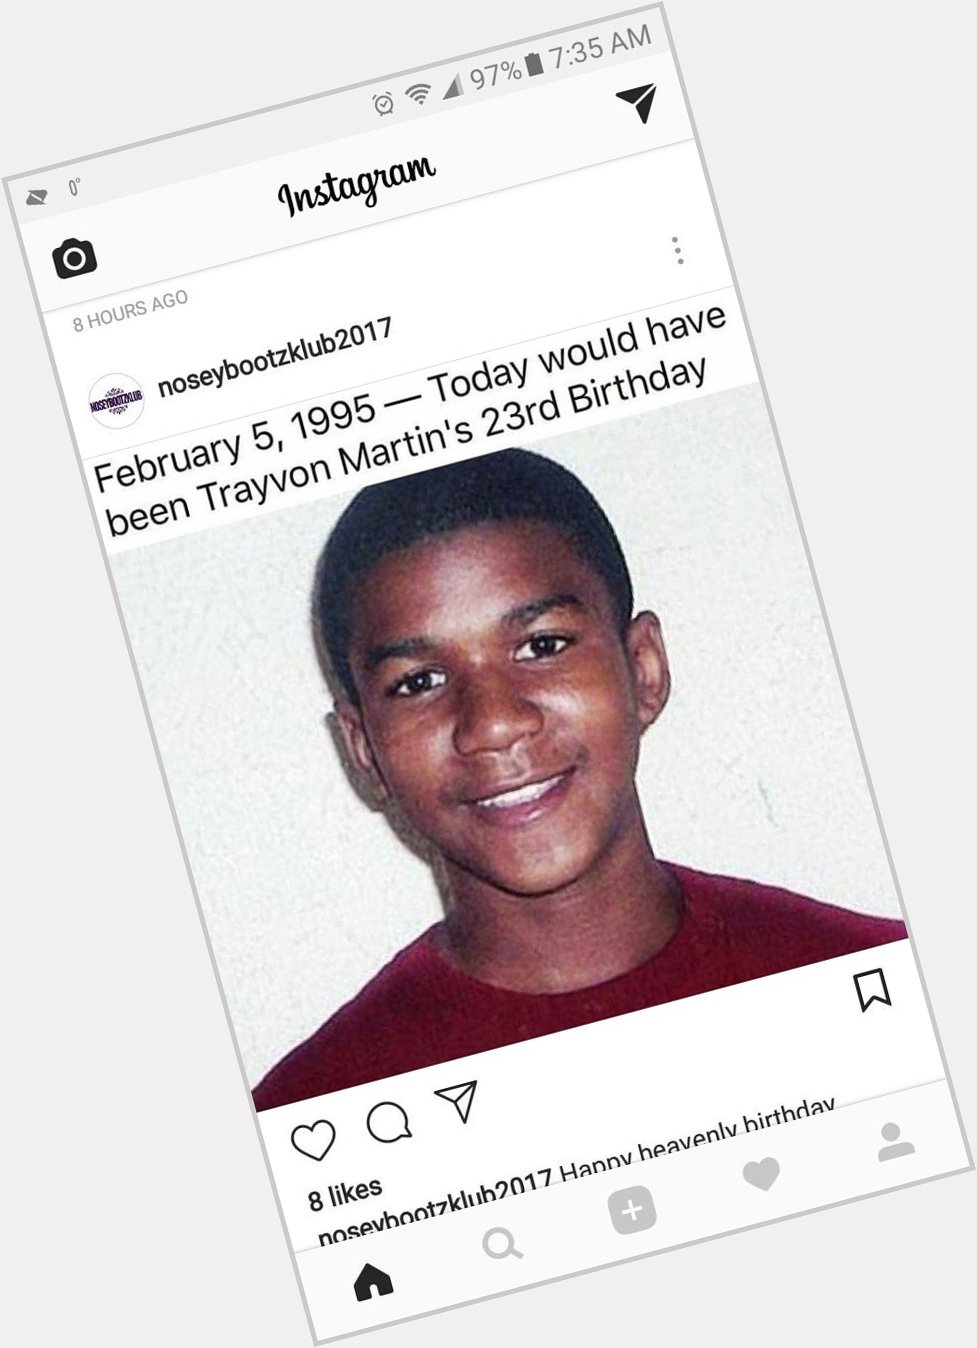 Happy birthday 23th birthday to Trayvon Martin 